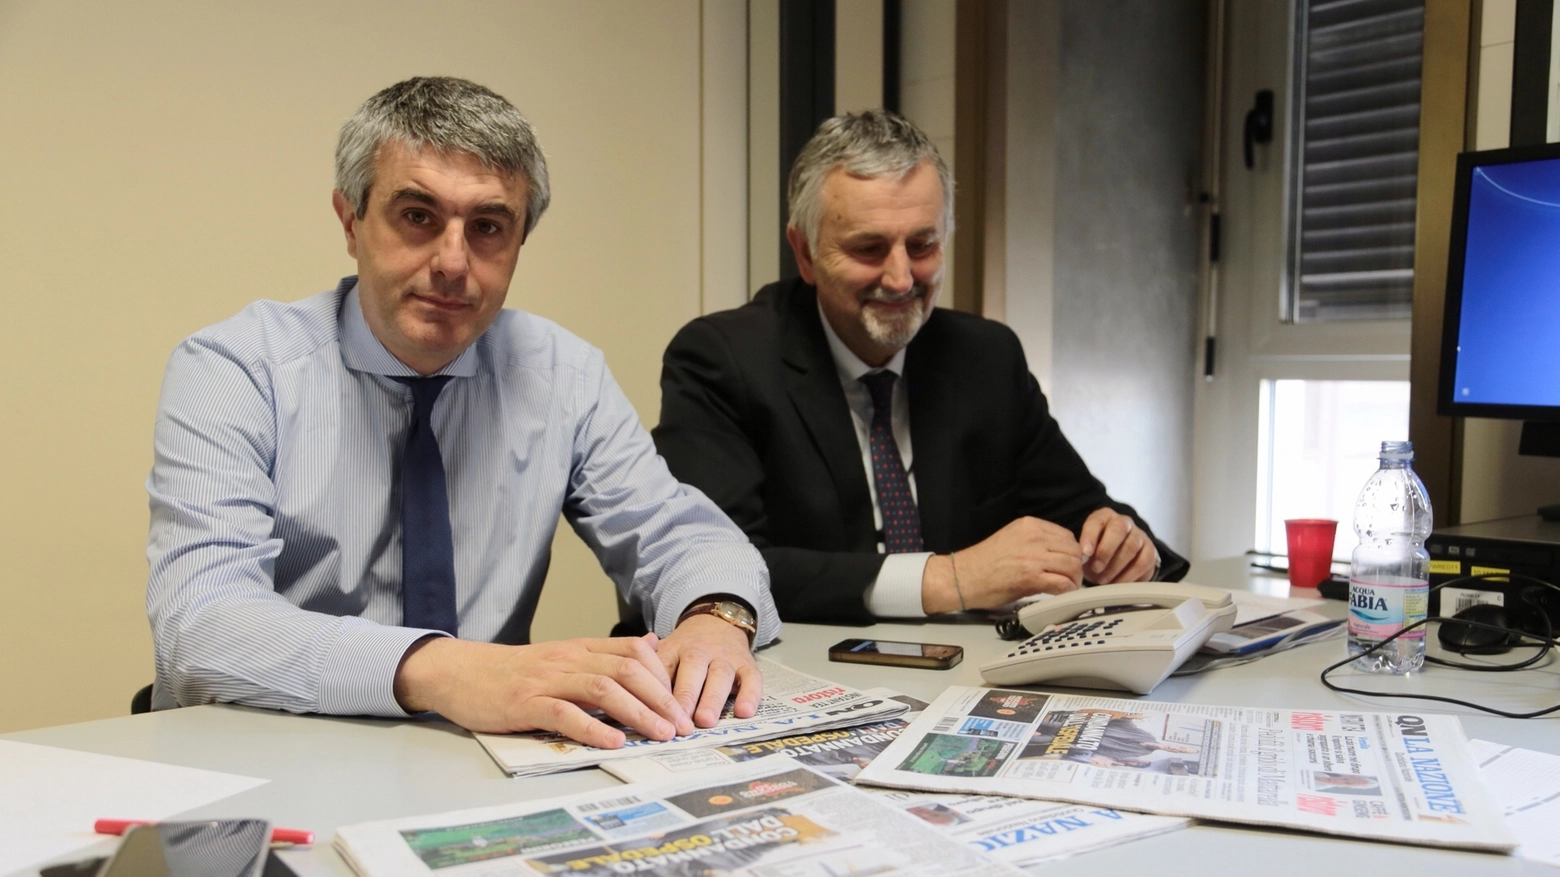 L'assessore regionale Ceccarelli (a destra) e il direttore del nostro giornale De Robertis